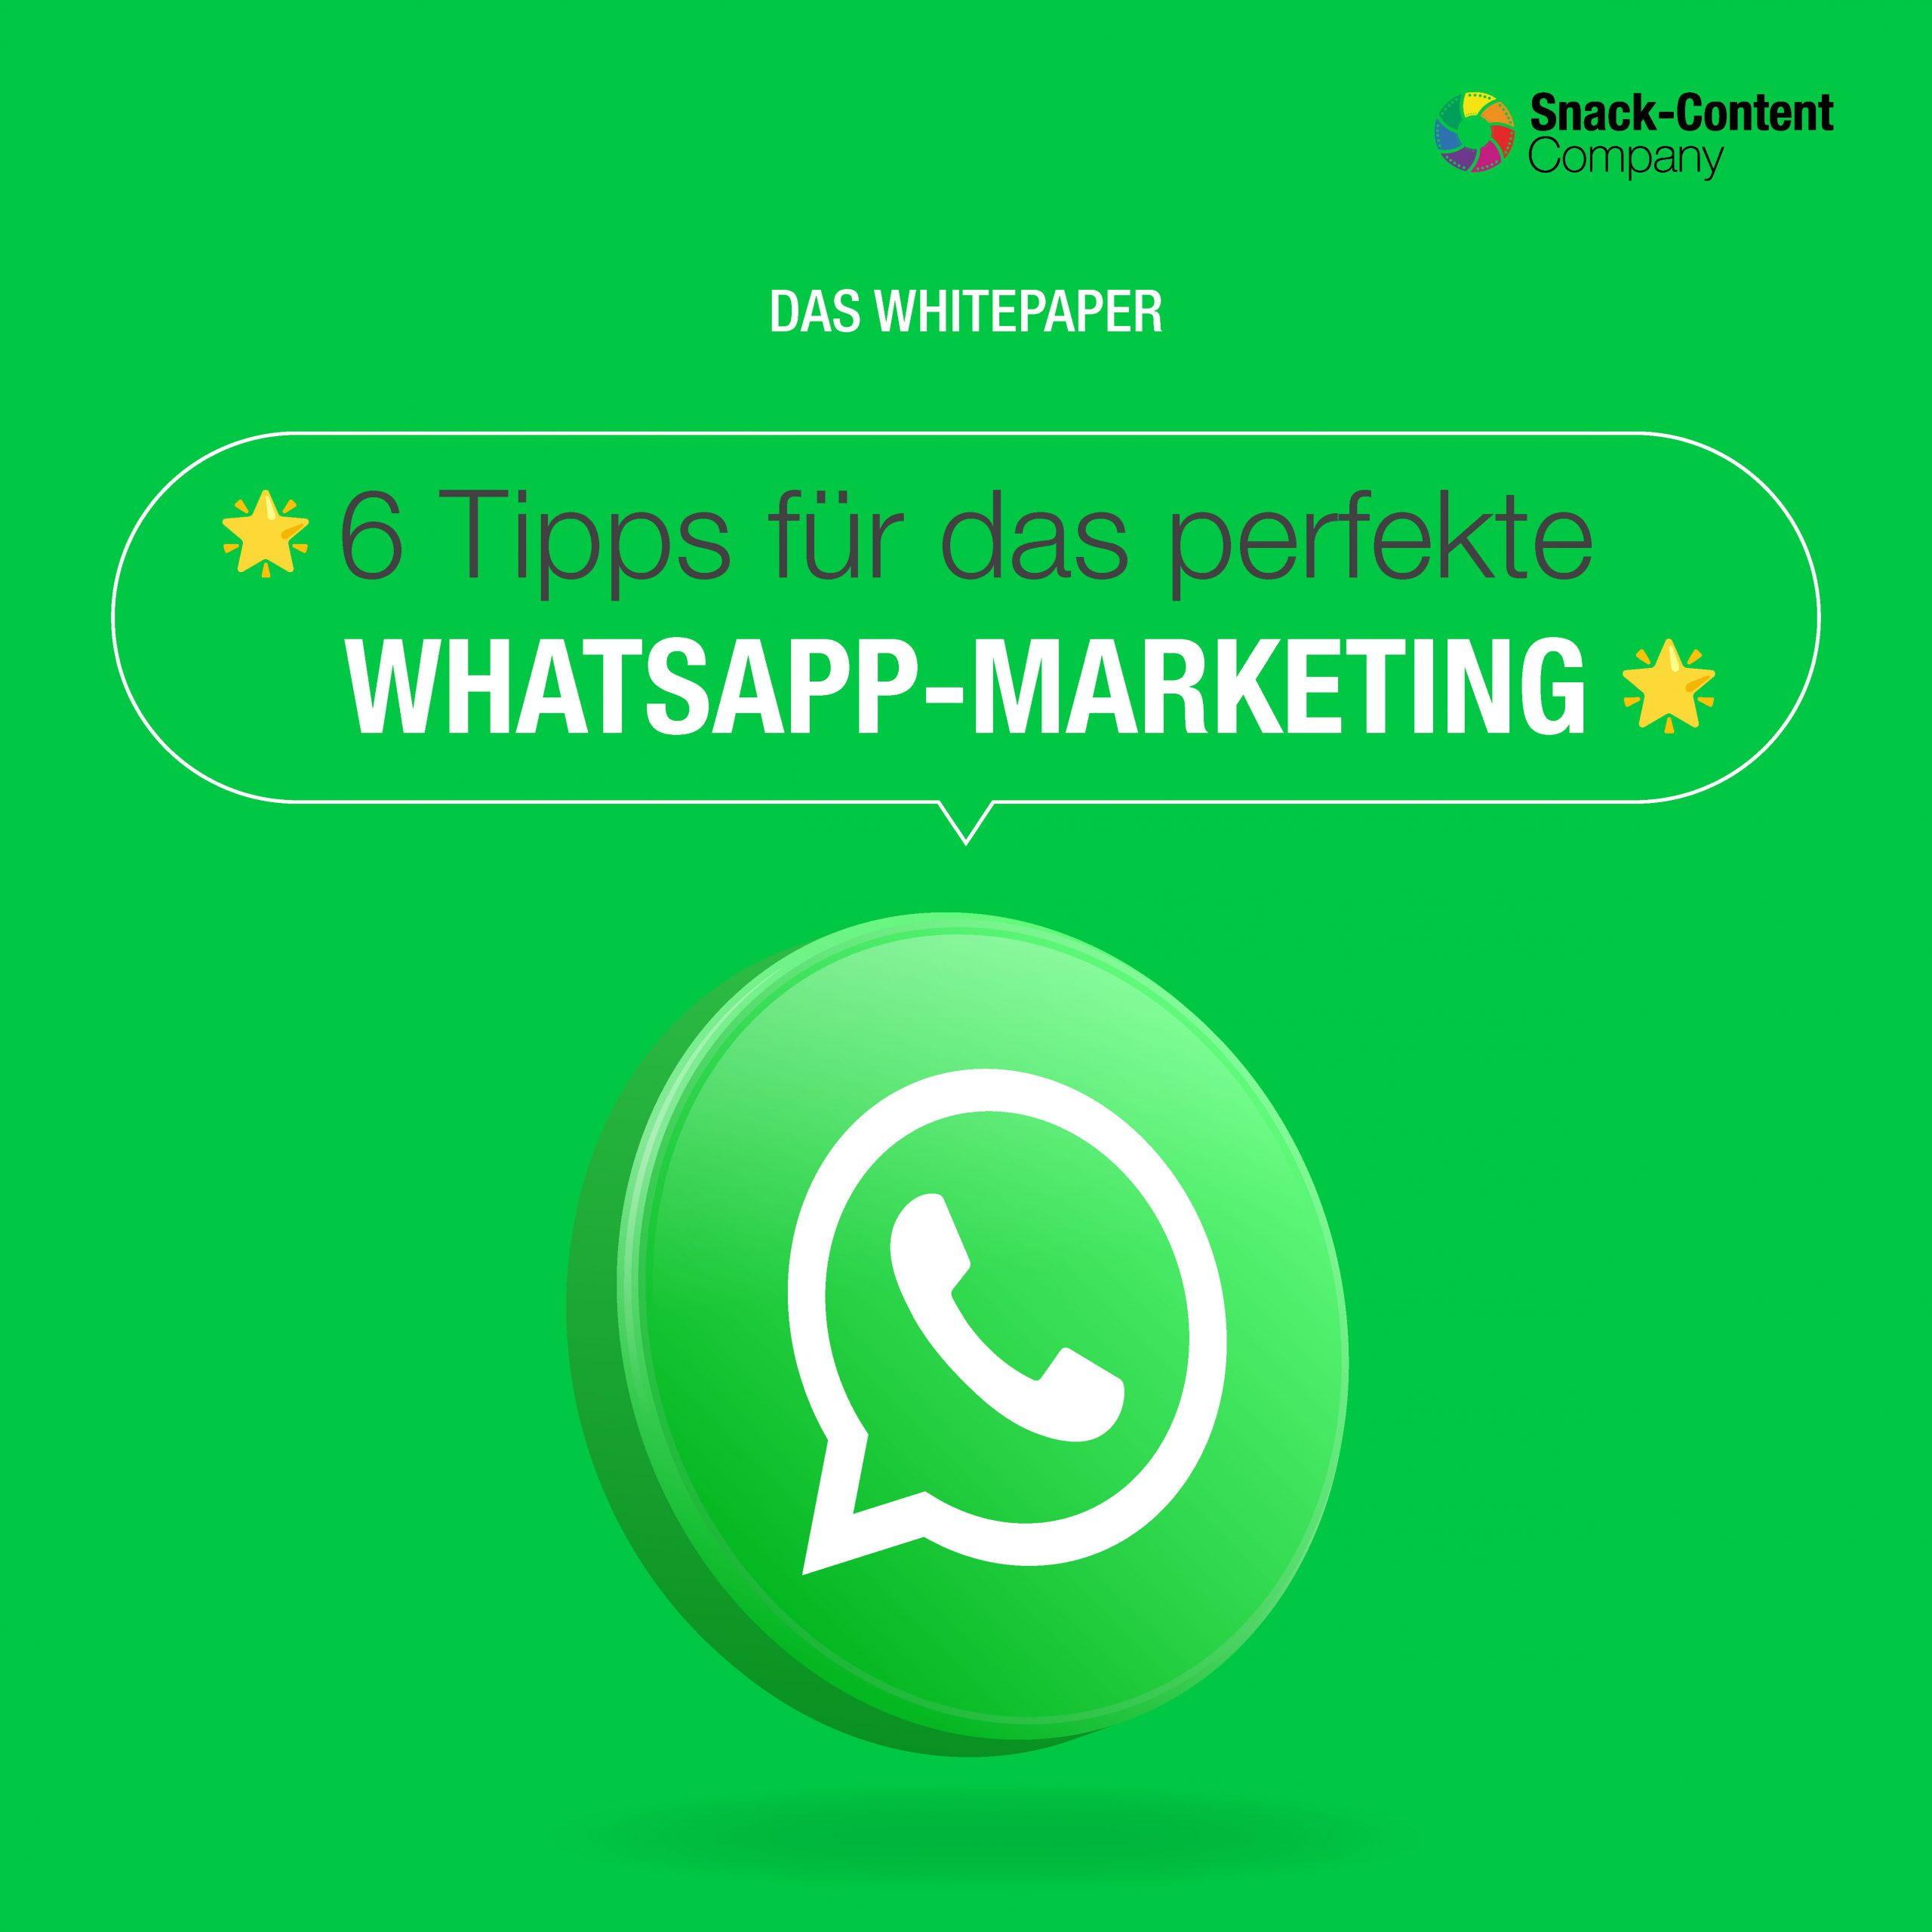 Das Whitepaper der Snack-Content Company: 6 Tipps für das perfekte WhatsApp Marketing